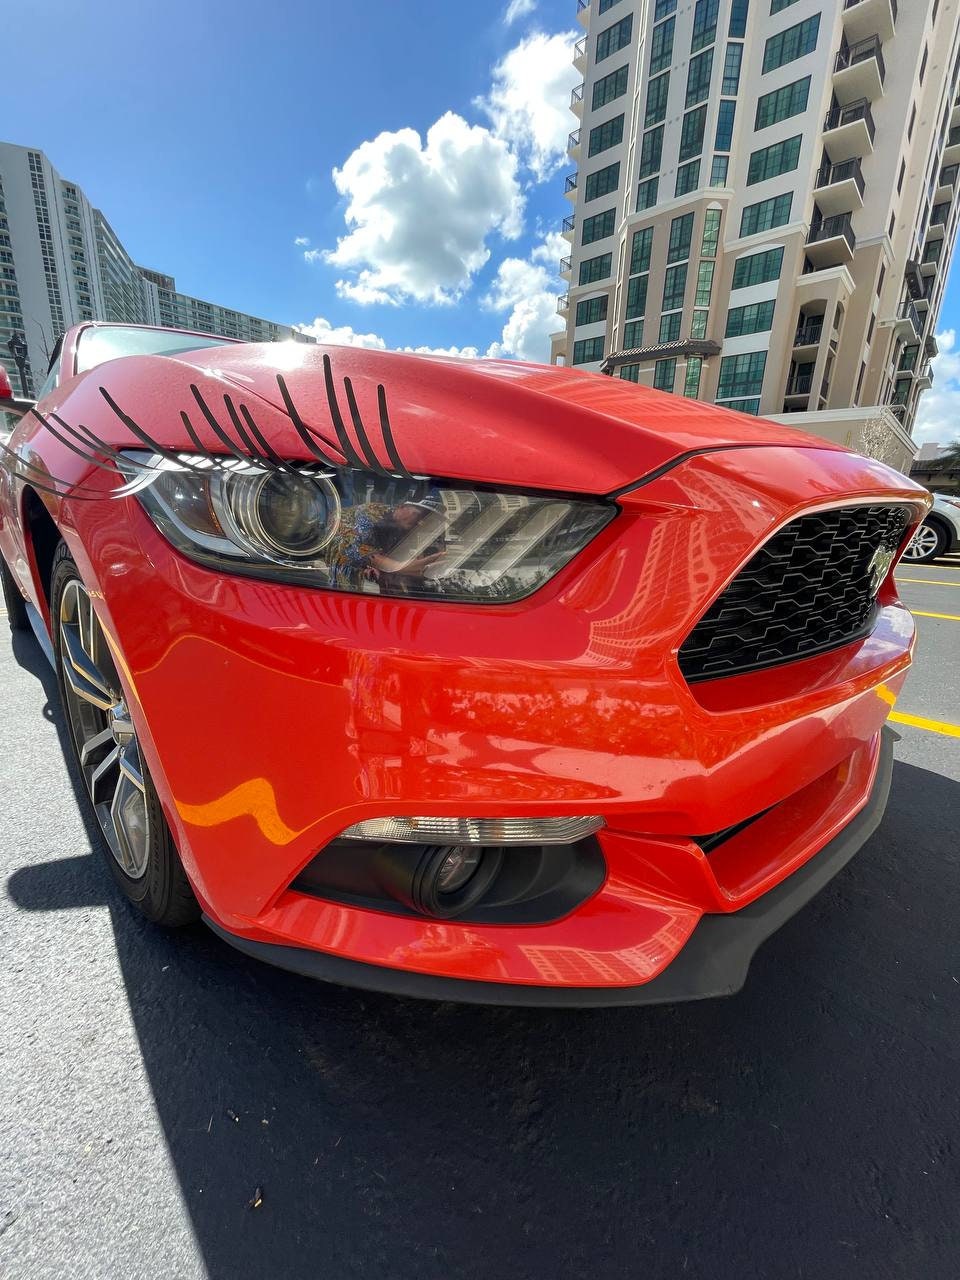 Eyelashes for Car 